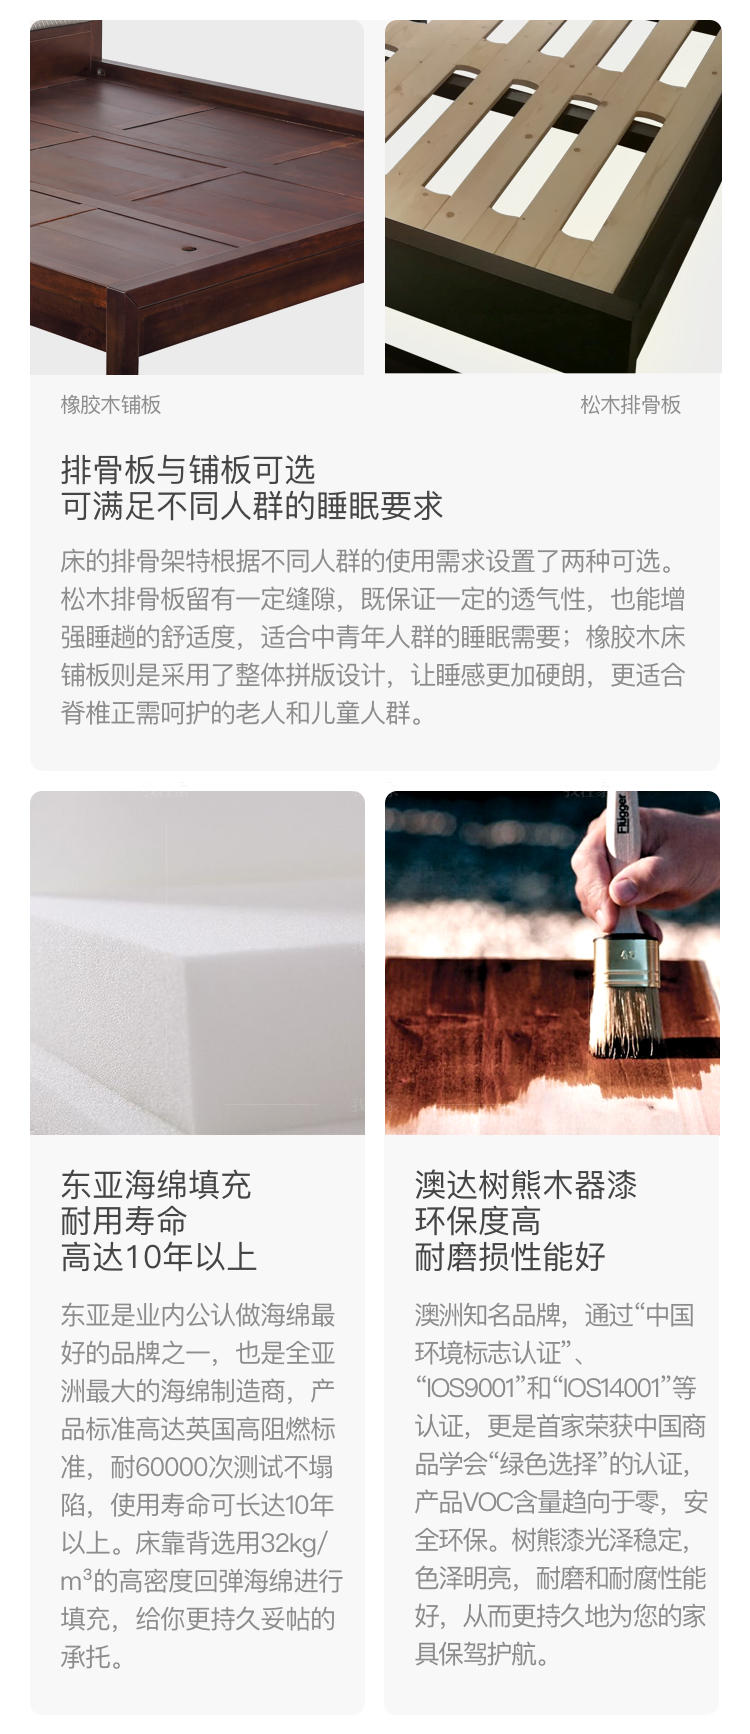 新中式风格云汐双人床的家具详细介绍